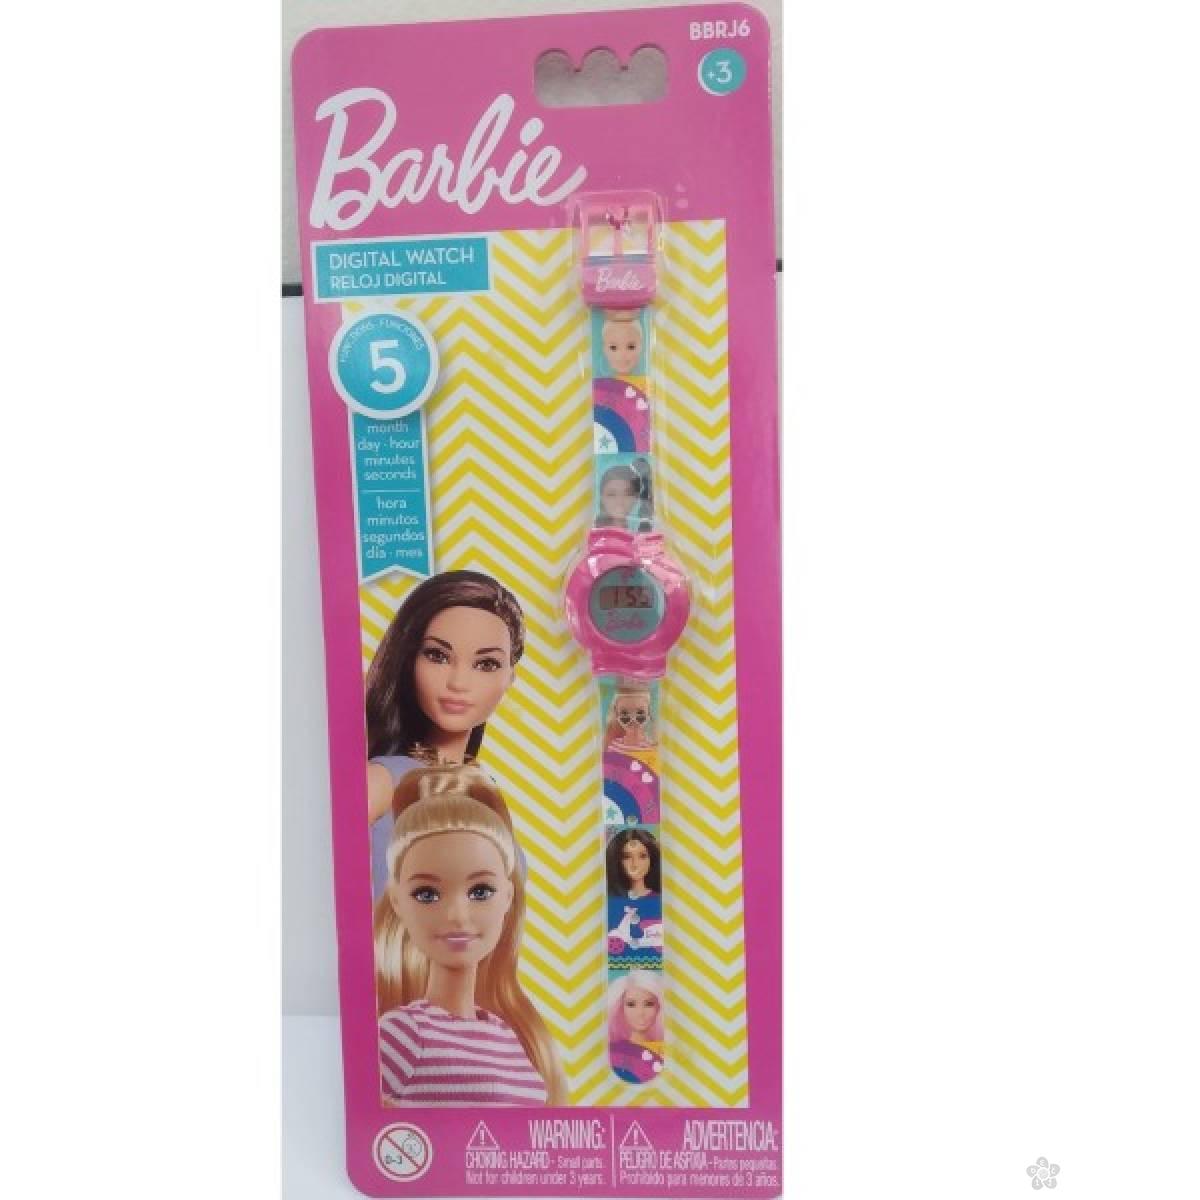 Barbie digitalni sat BBRJ6 